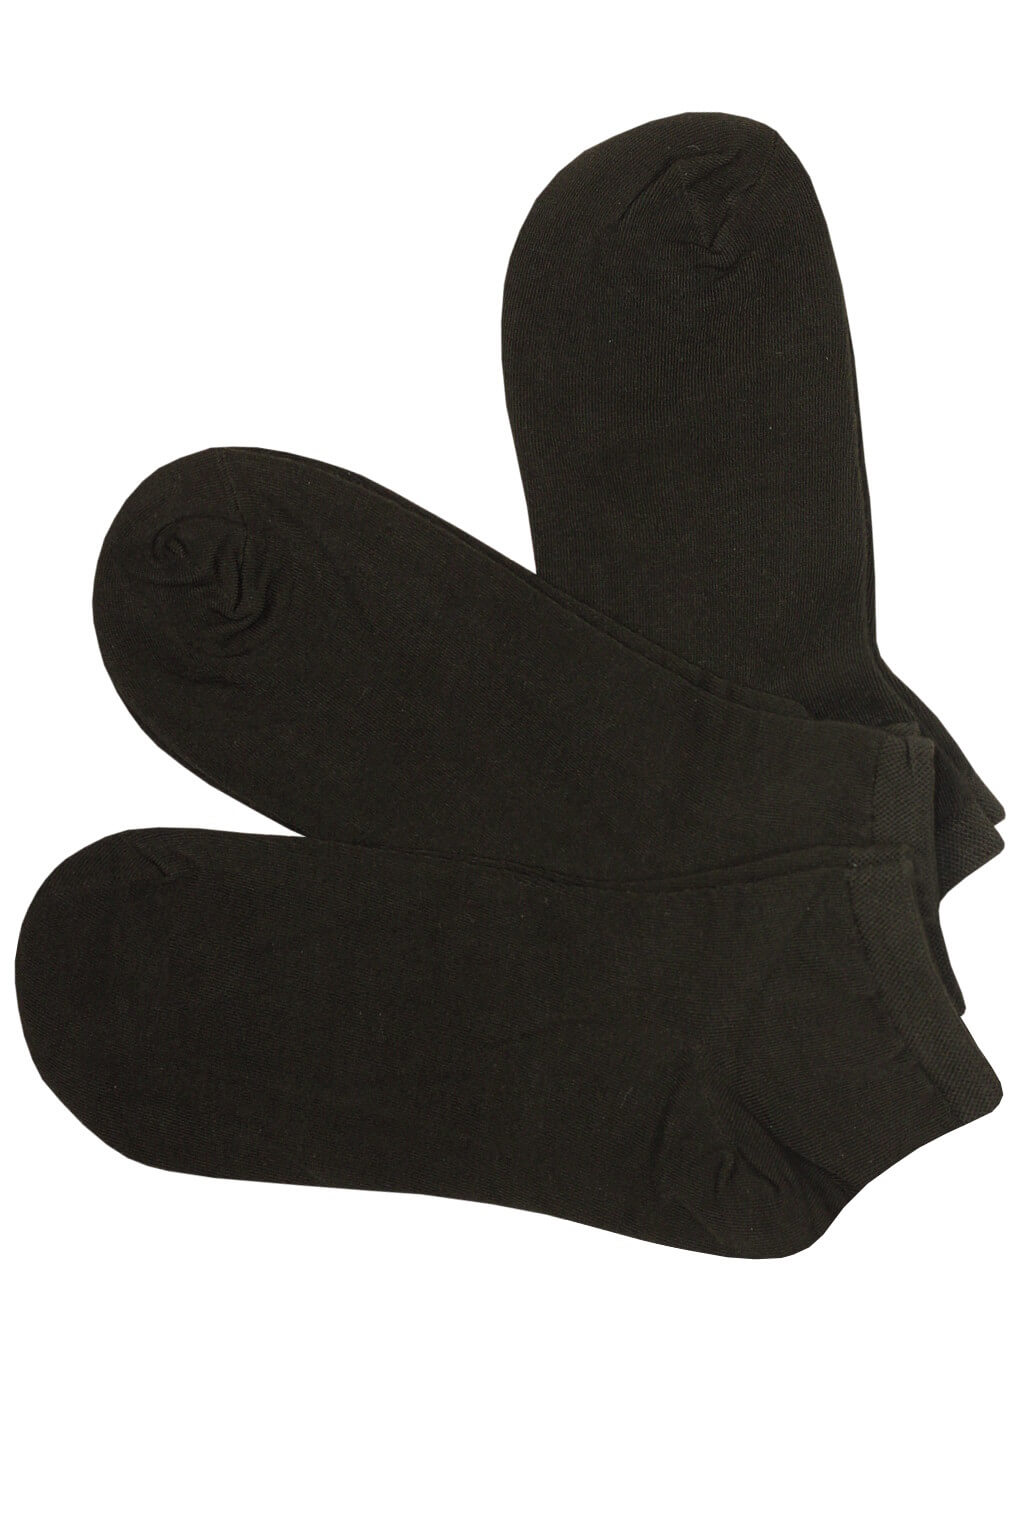 Zdravotní kotníkové ponožky pro muže XM2201C - 3páry 43-47 černá